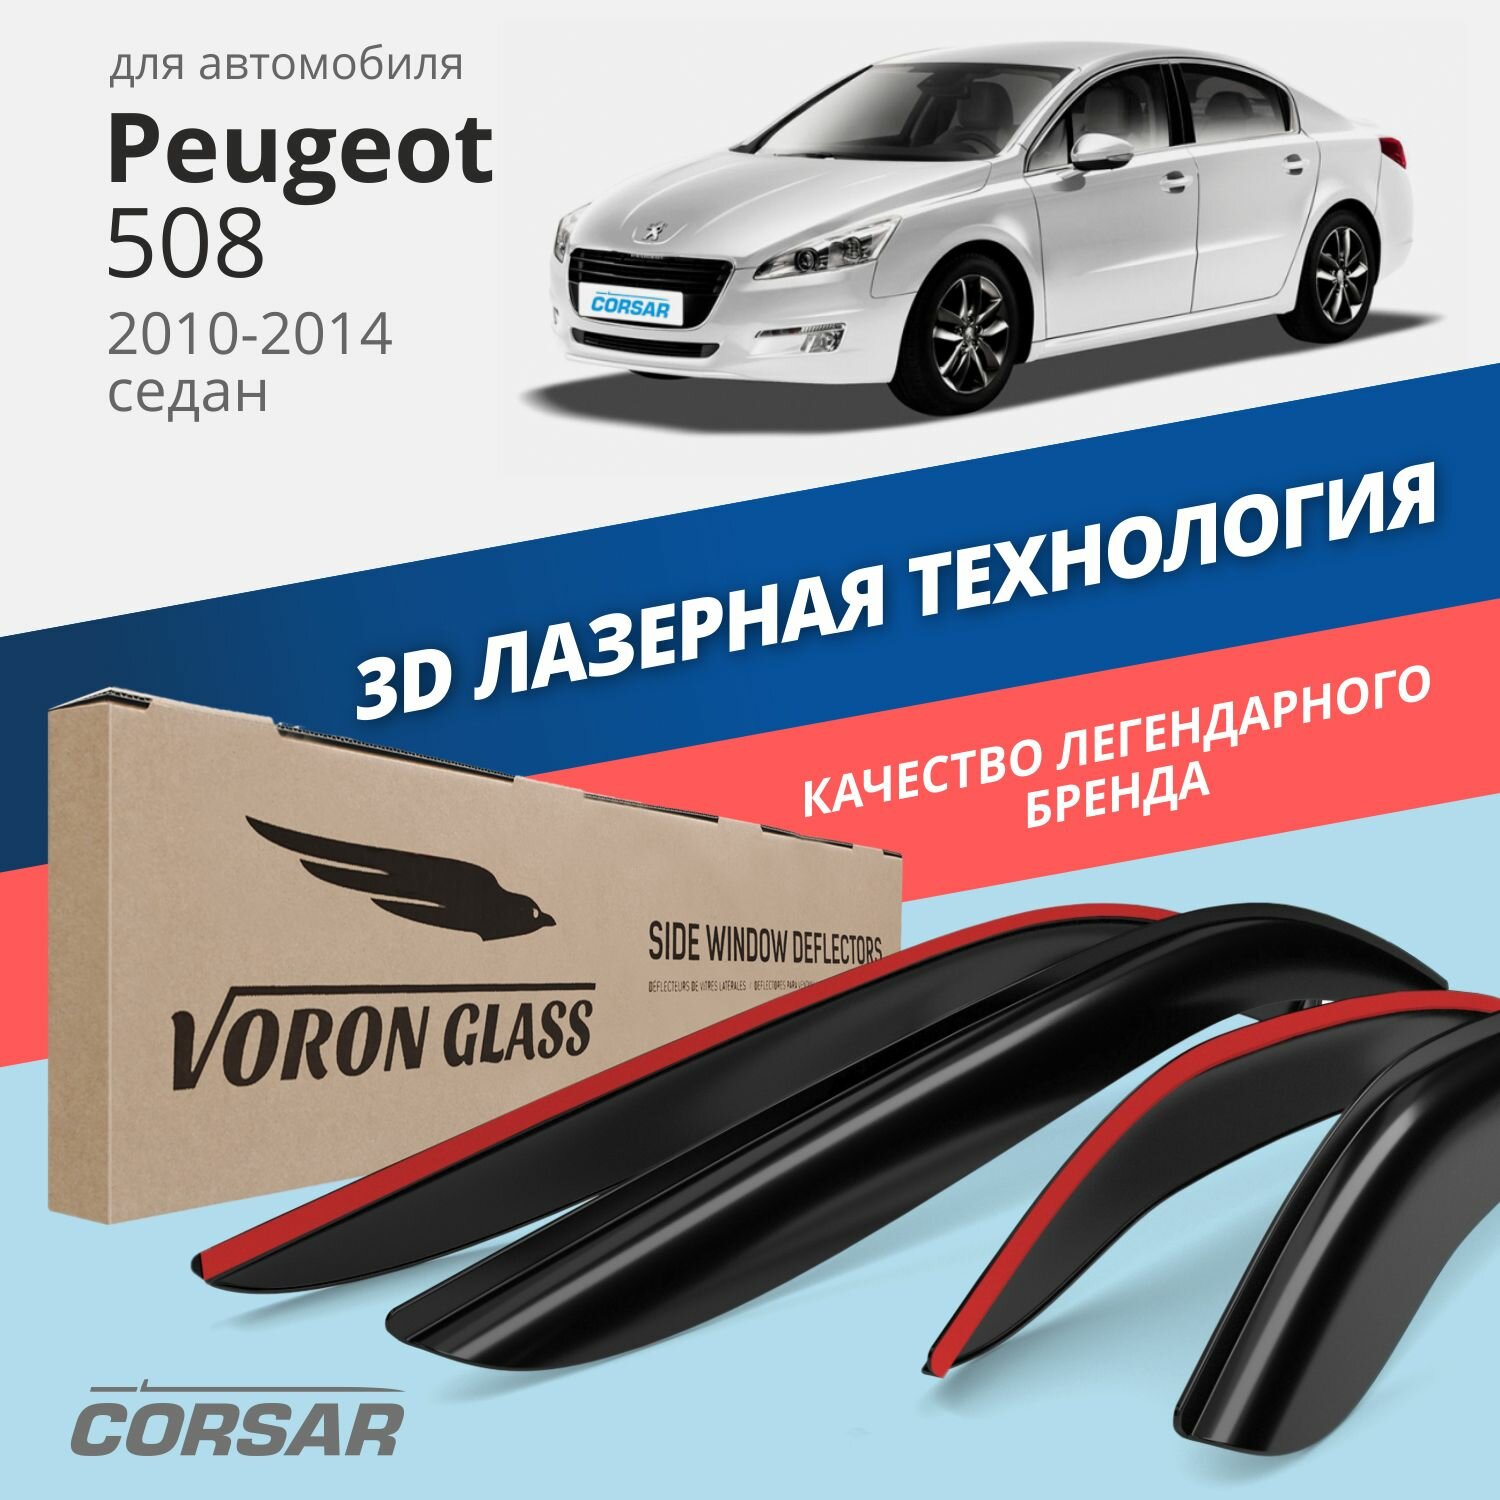 Дефлекторы окон Voron Glass серия Corsar для Peugeot 508 2010-2014 накладные 4 шт.